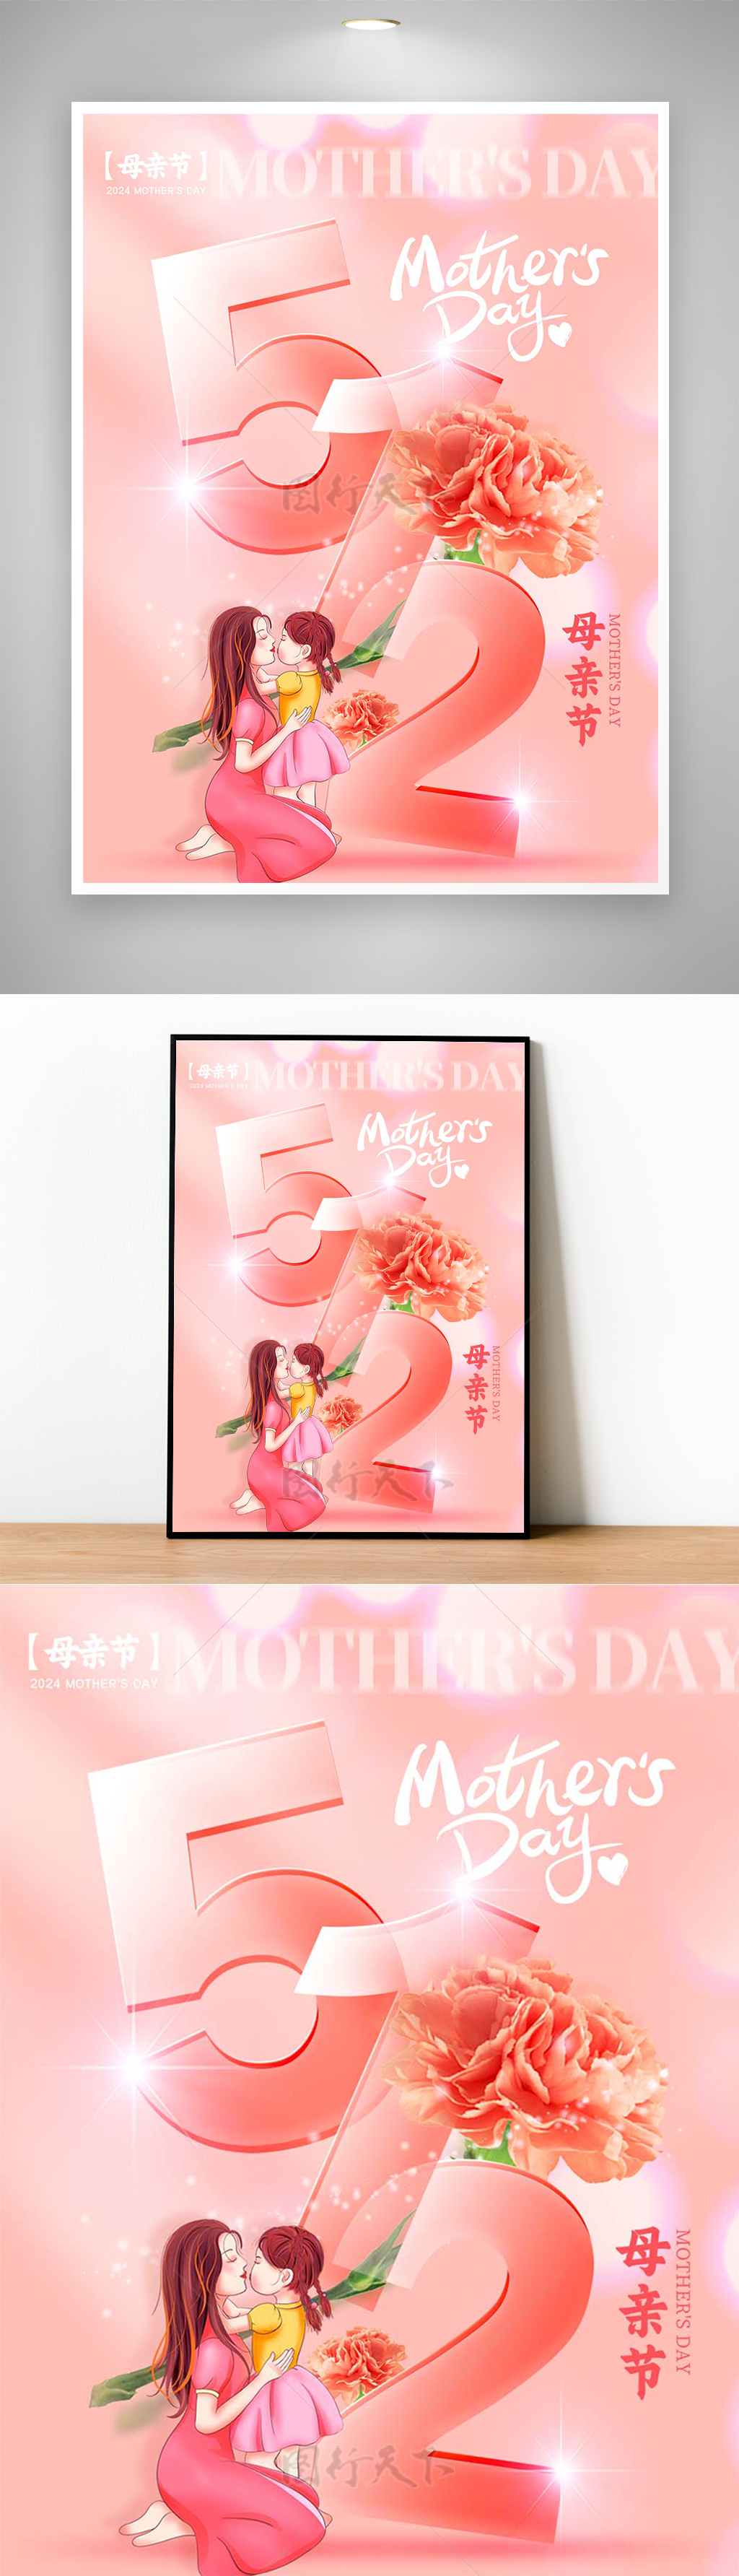 康乃馨母女怀抱母亲节节日宣传海报